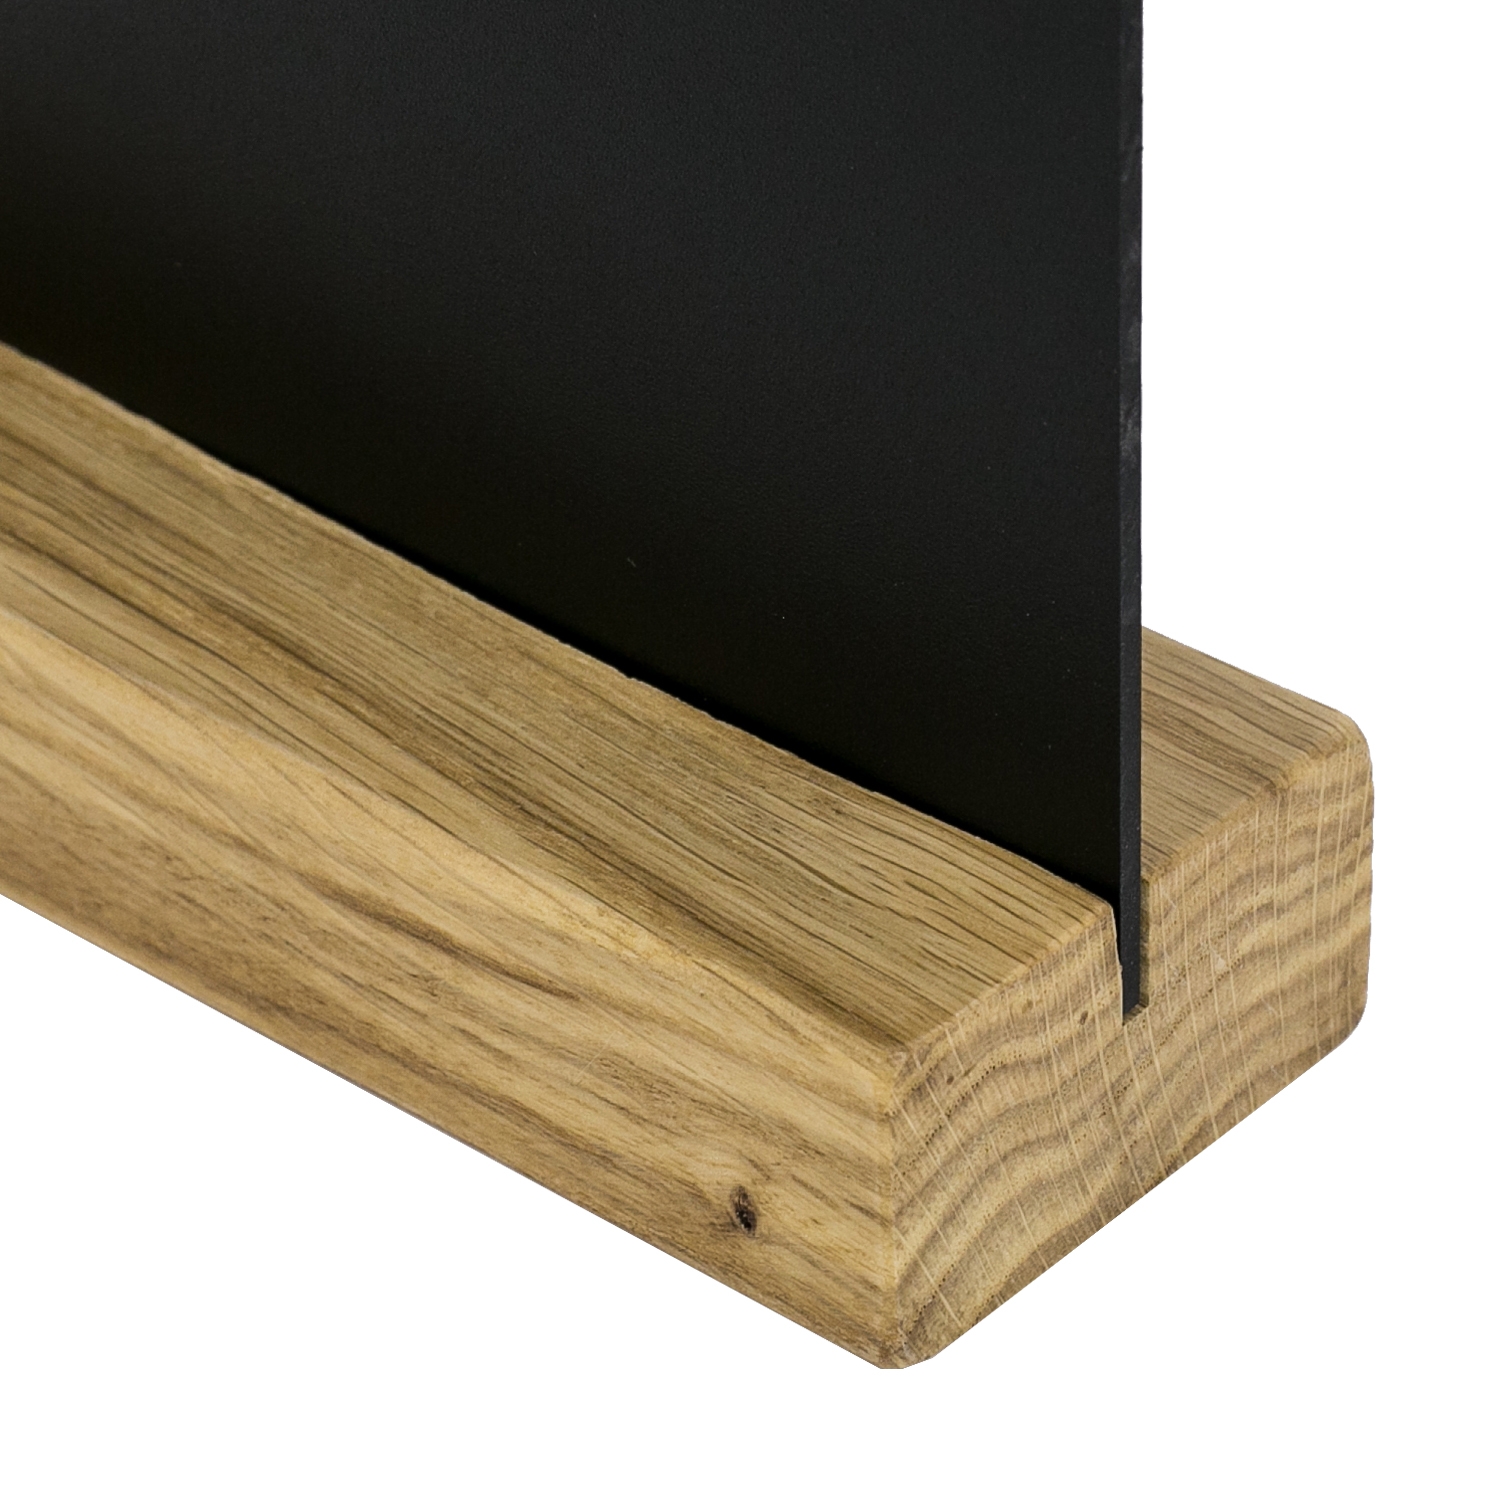 Kreidetafel mit Holzfuß als Tischaufsteller von HMF in DIN A6 Hochformat in Schwarz